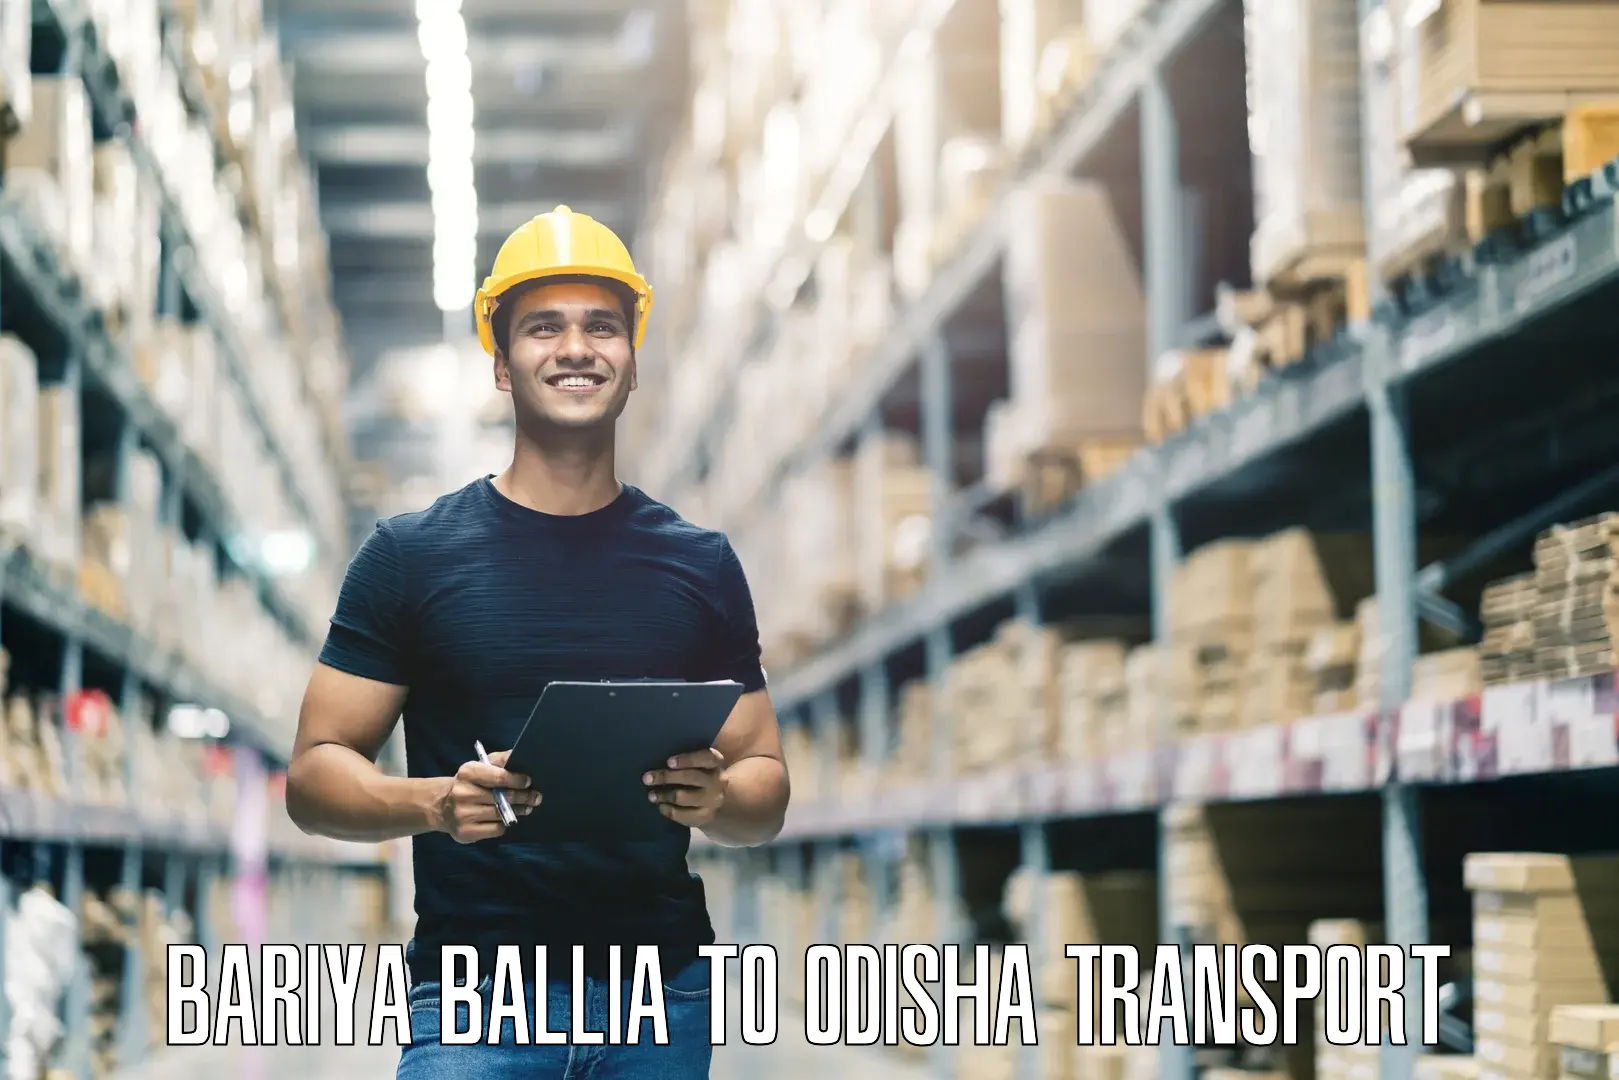 Nationwide transport services Bariya Ballia to Baleswar